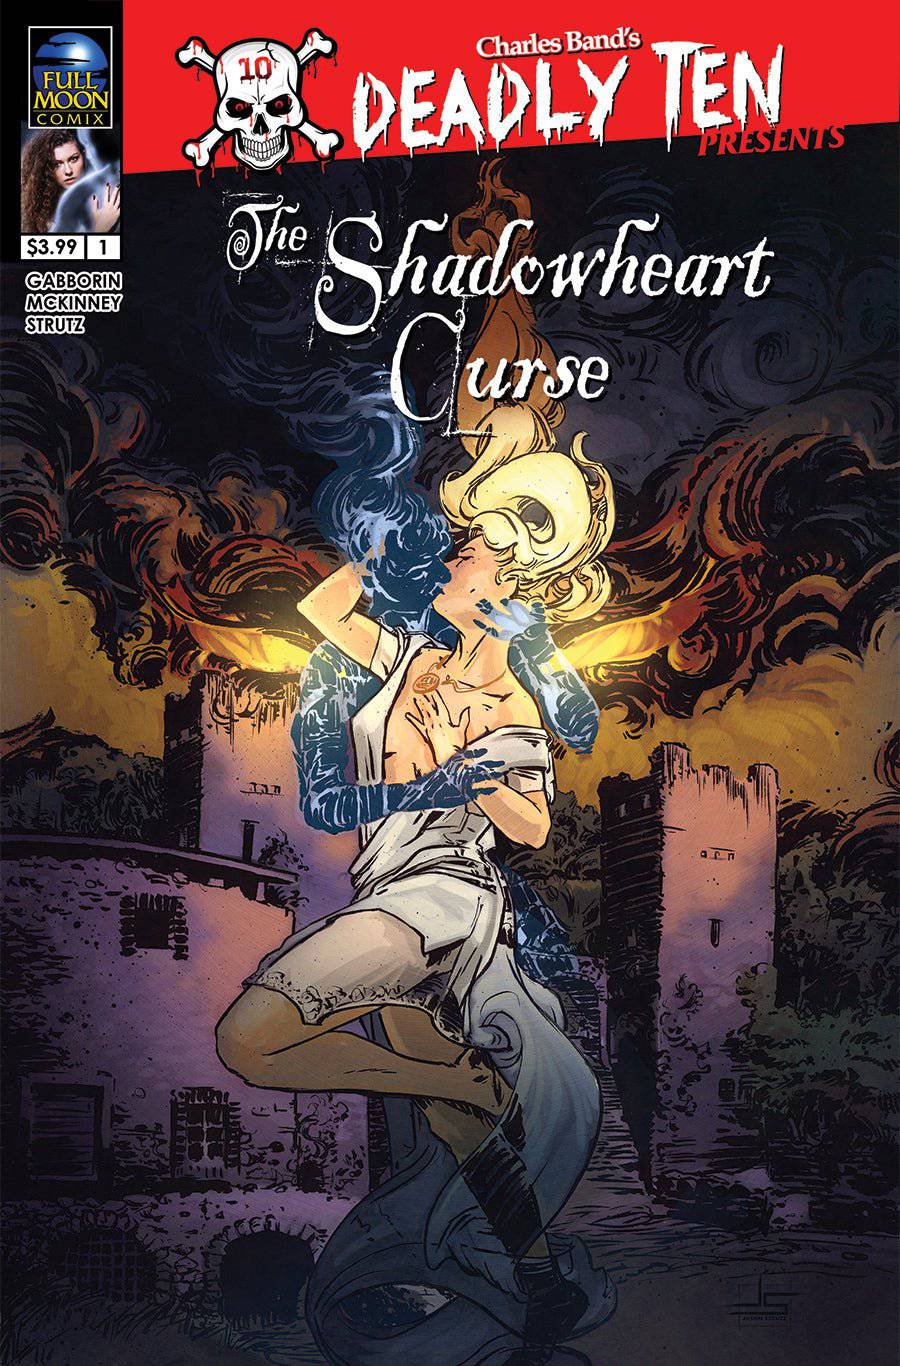 Deadly Ten Presents #7: The Shadowheart Curse (Jason Strutz Cover #1)